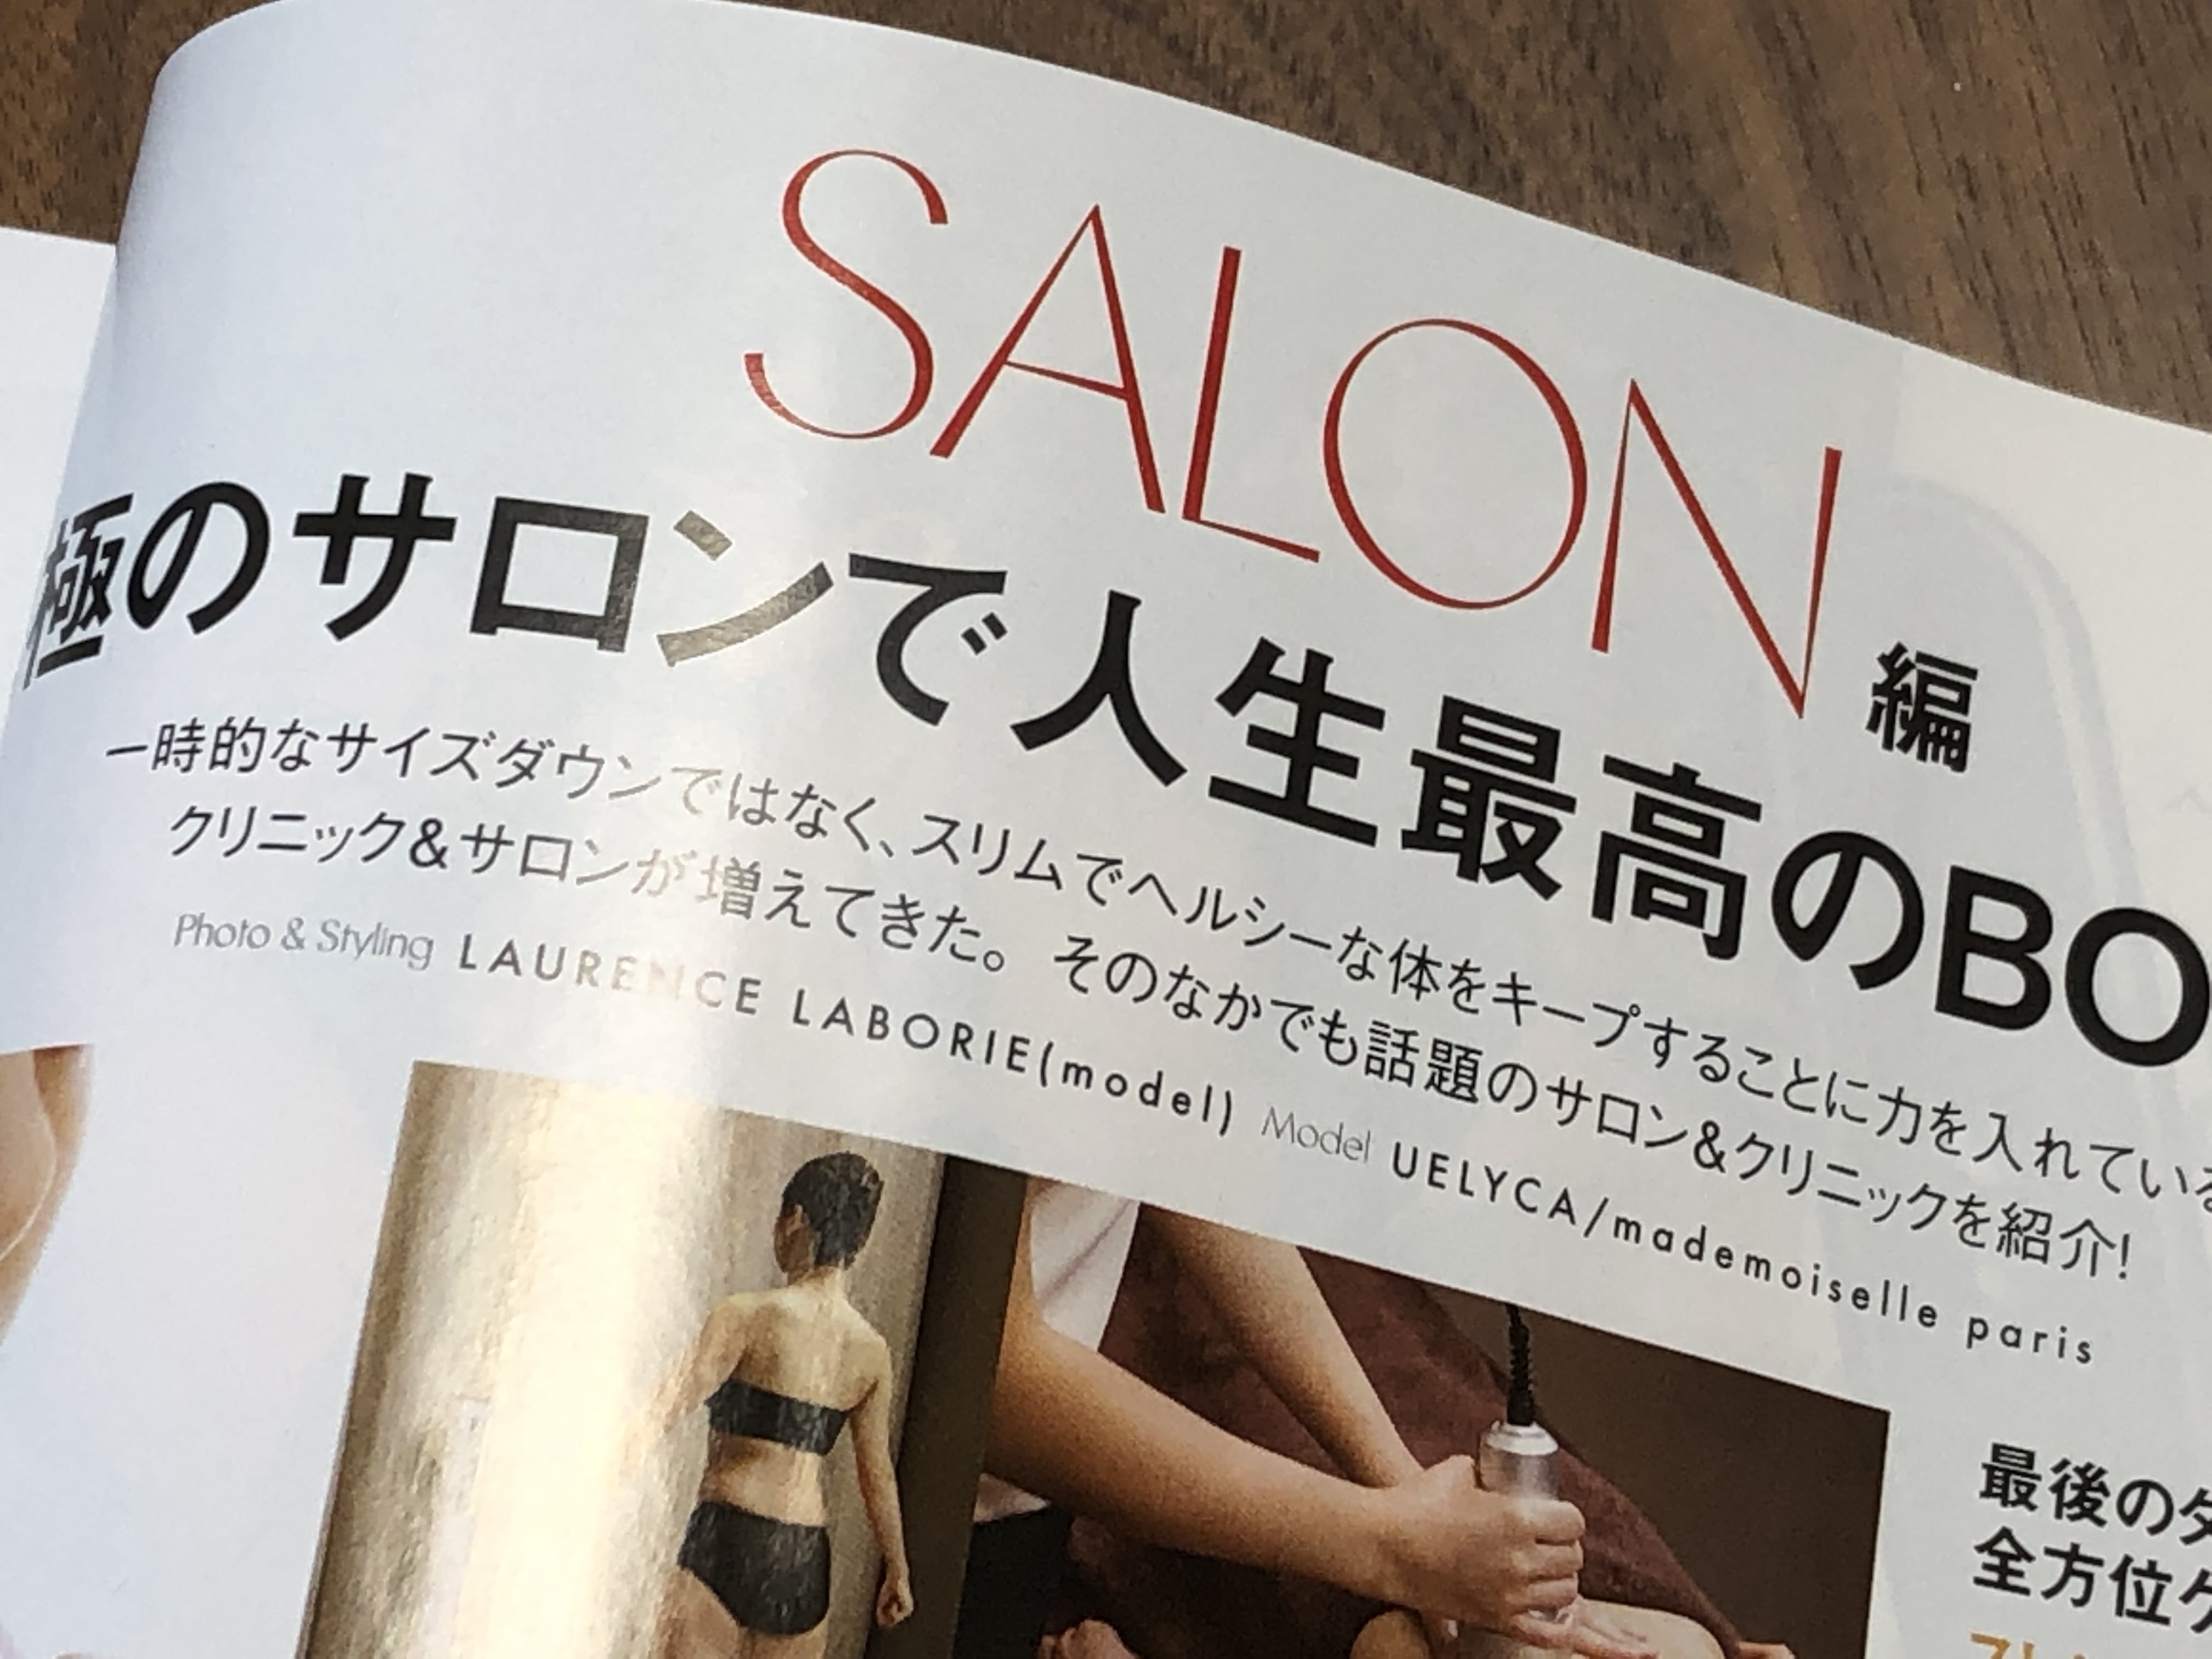 「表参道セラサイズスタジオ」がELLE JAPON (エル・ジャポン) 2019 年 07 月号で紹介されました！